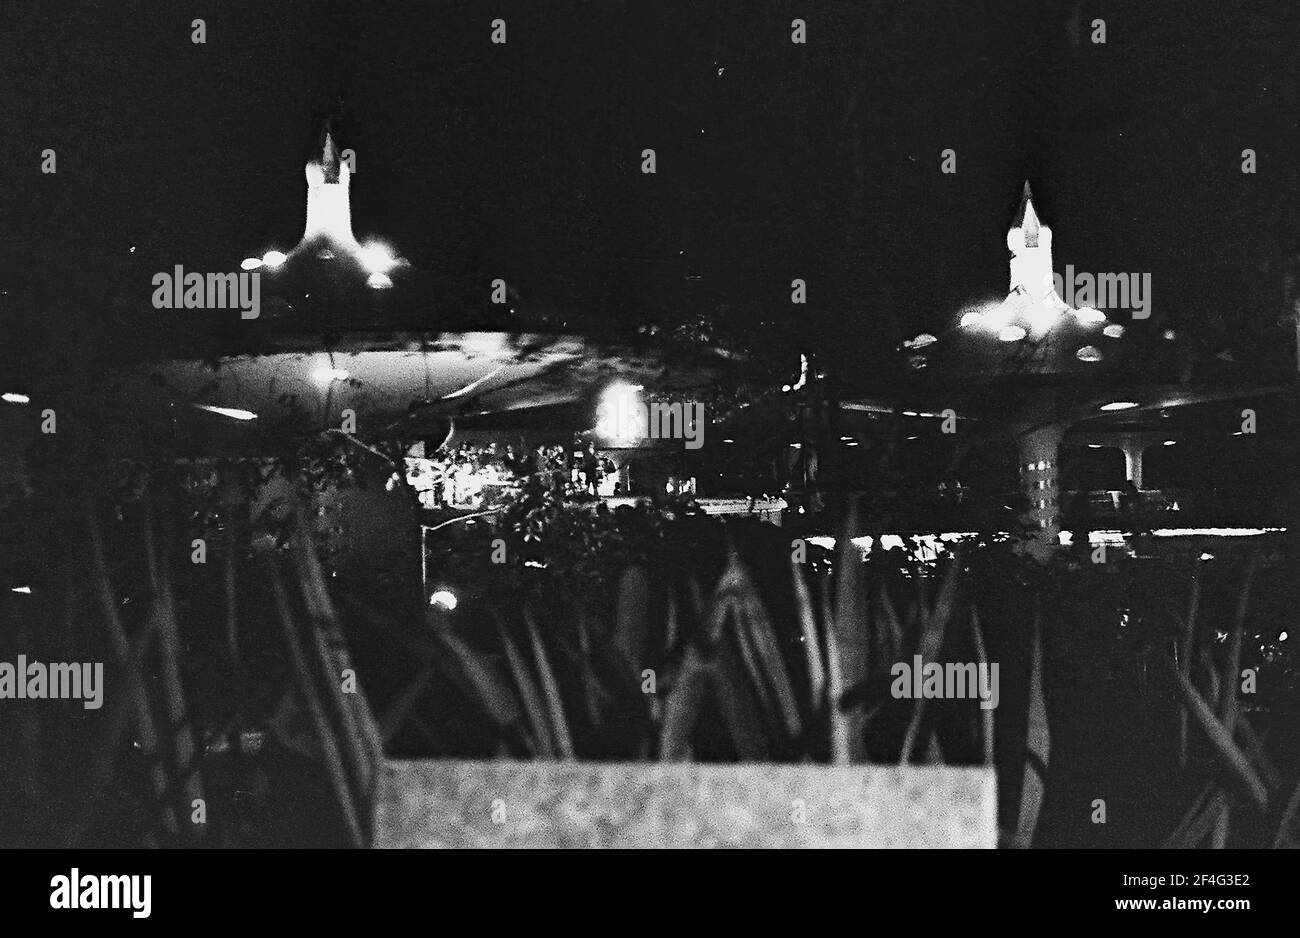 Nachtaufnahme des Nachtclubs Tropicana, mit Laub und Betonschirmen im Vordergrund und dem Arcos de Cristal im Hintergrund, Havanna, Kuba, 1964. Aus der Sammlung Deena Stryker Photographs. () Stockfoto